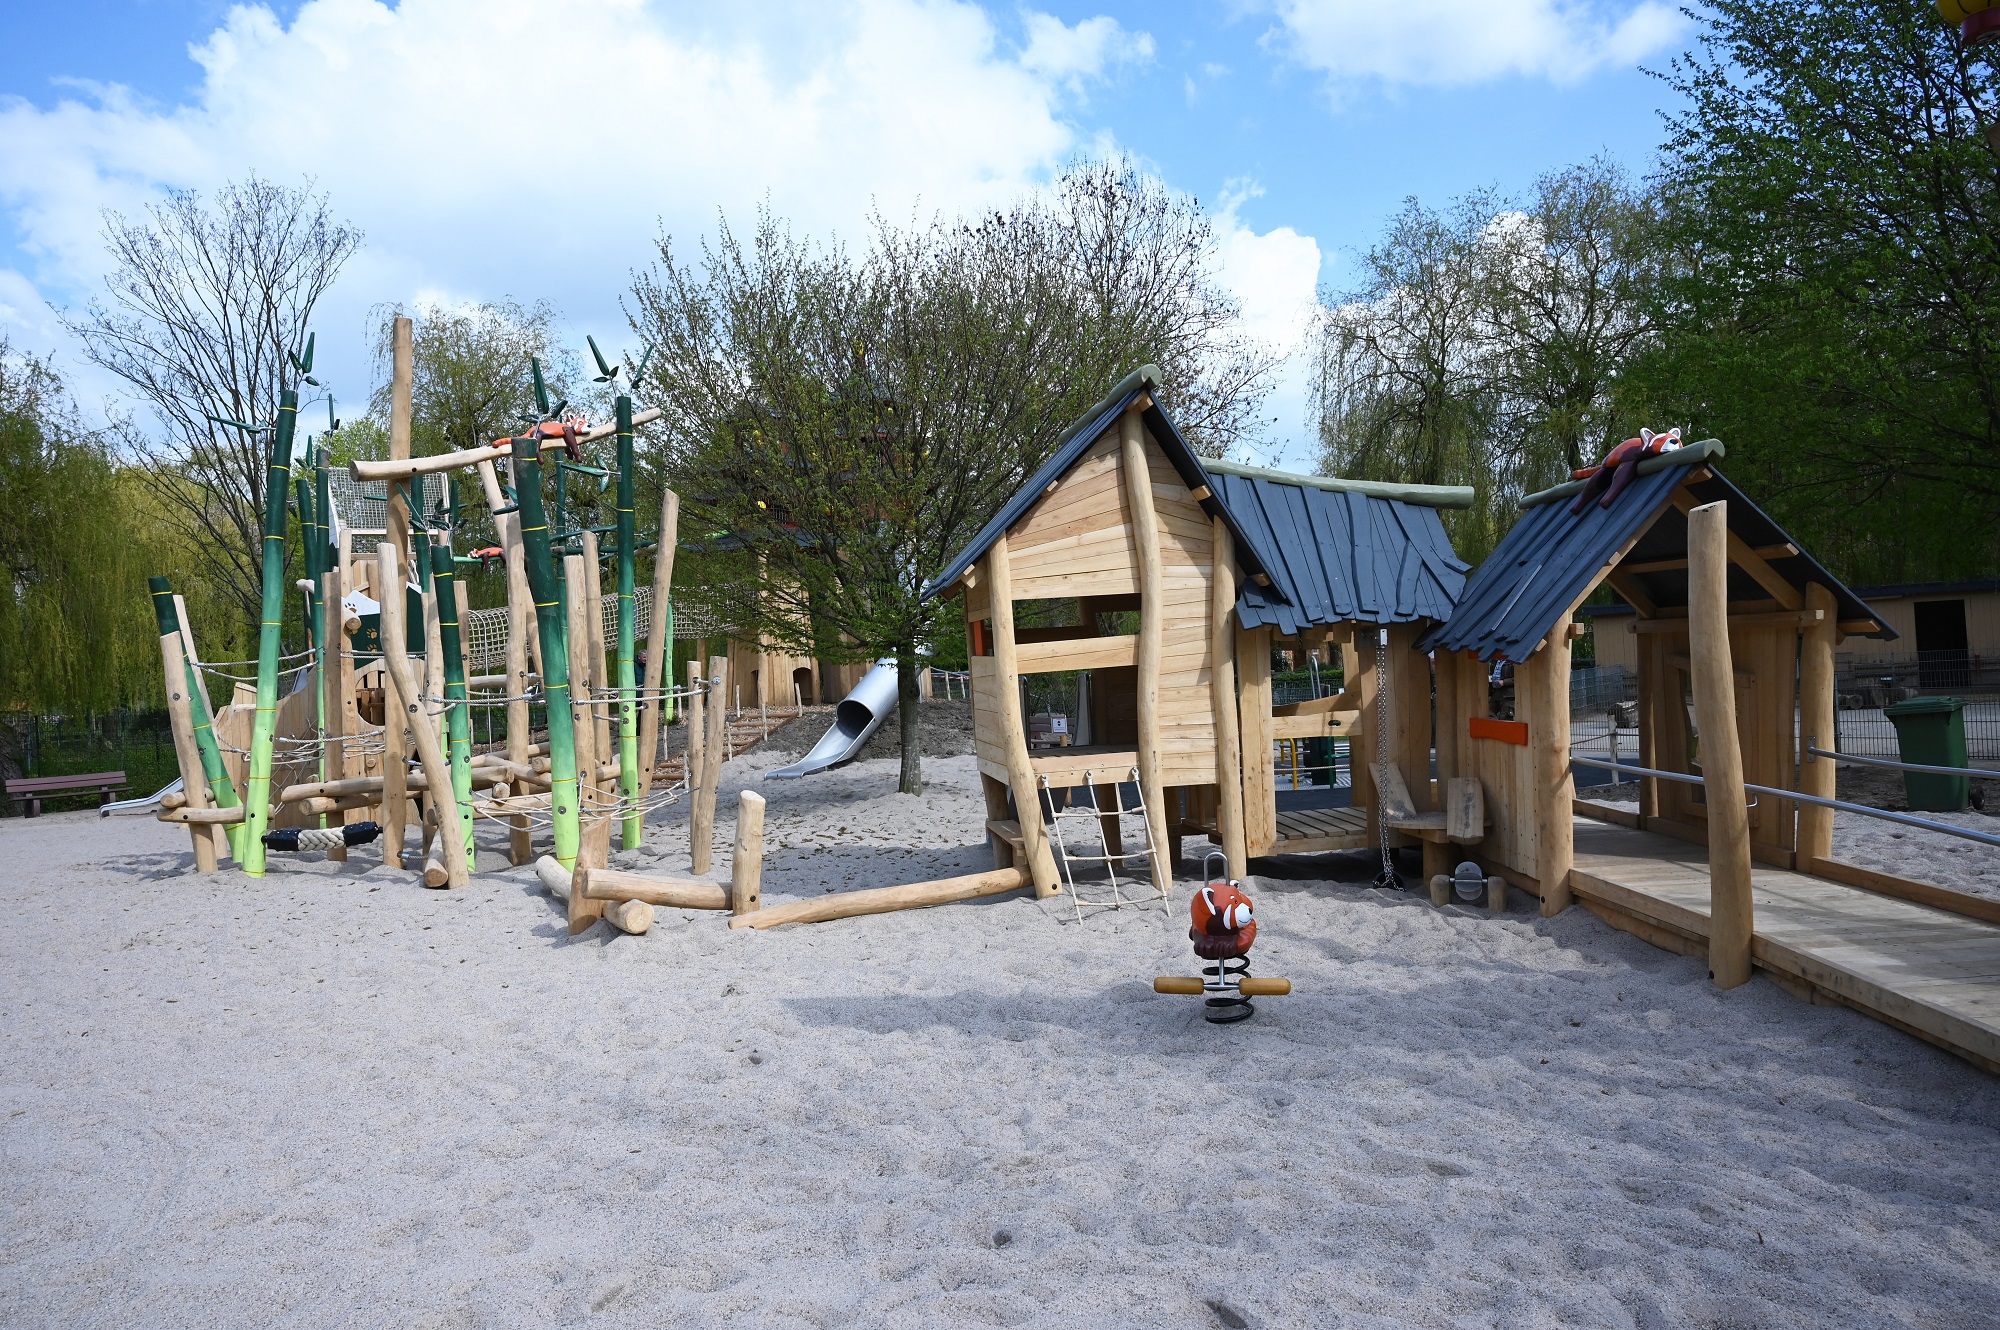 Der Playmore Fantasy-Abenteuerspielplatz im Tiergarten Kleve gilt als einer der schönsten Spielplätze am Niederrhein